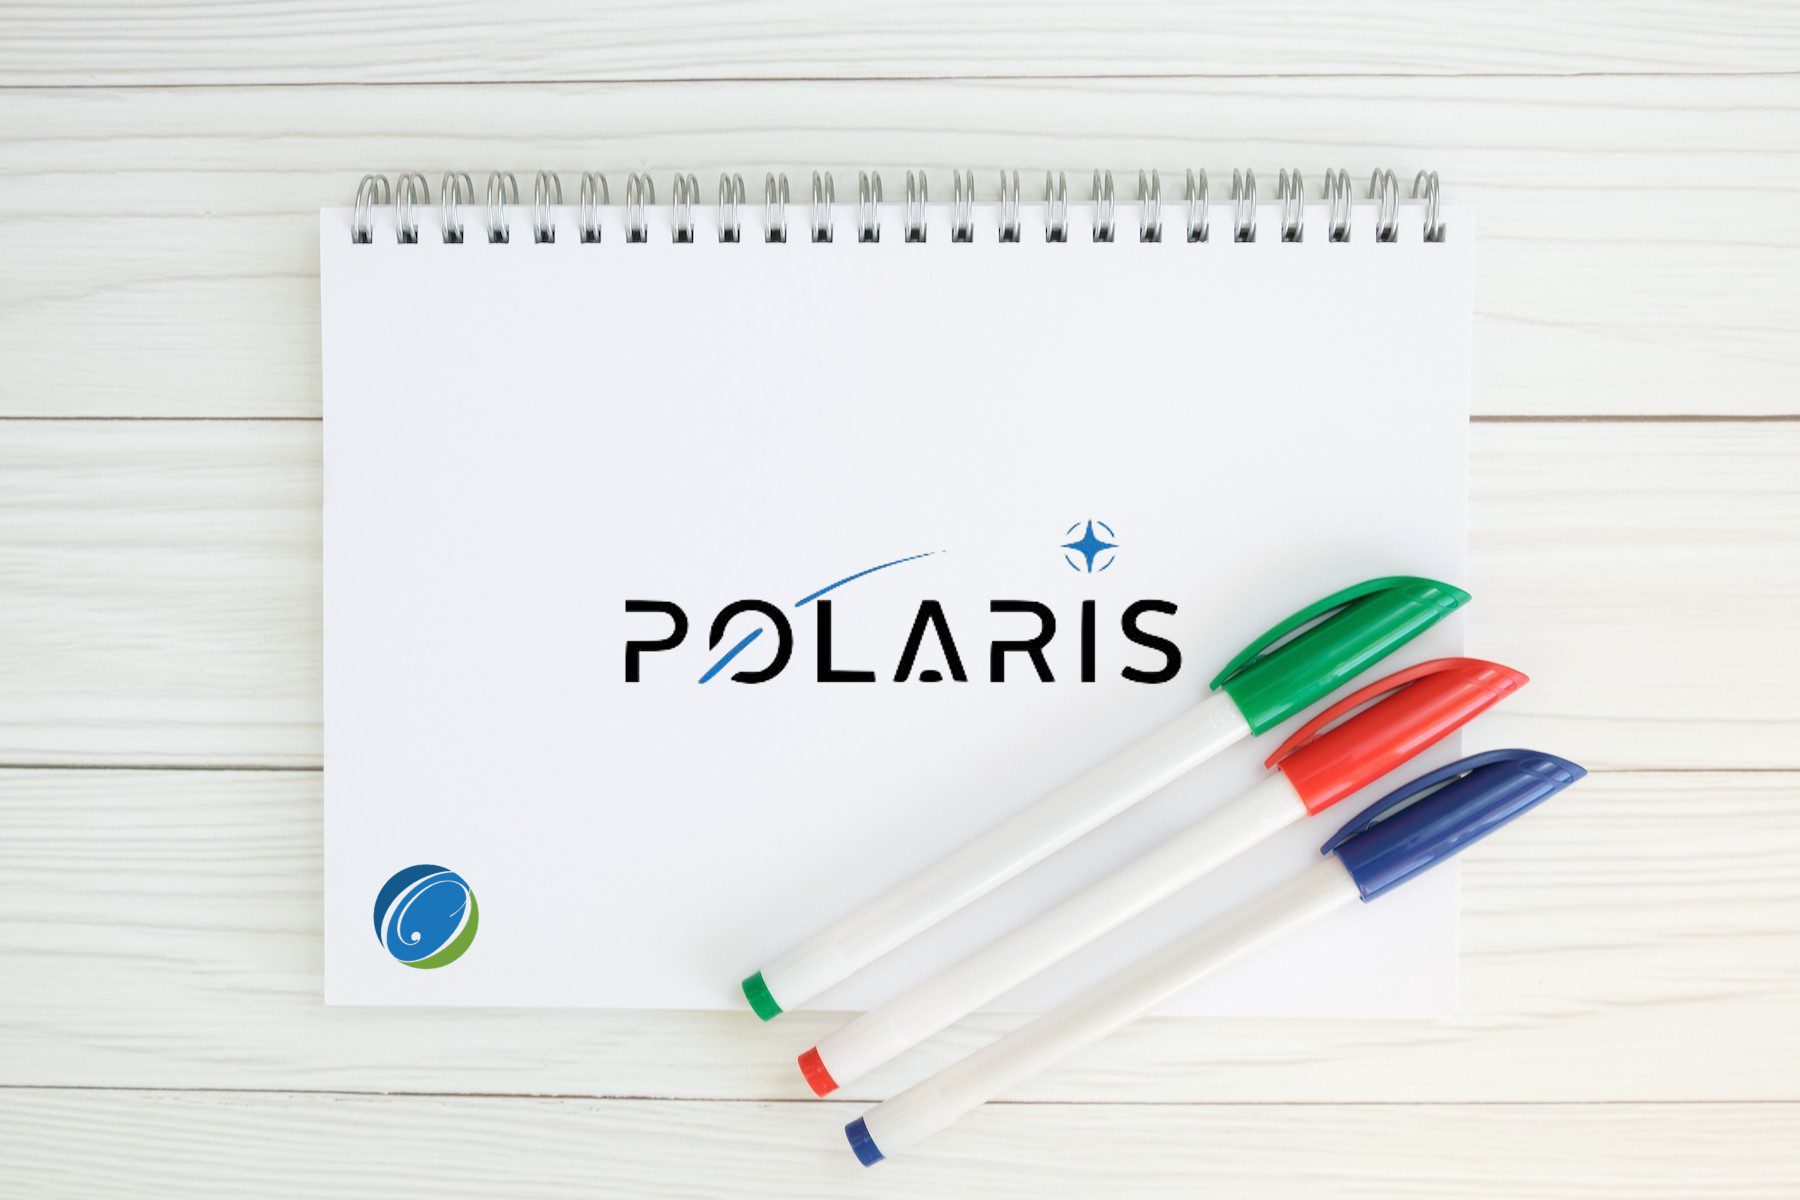 Polaris-Solicitation-Deadline